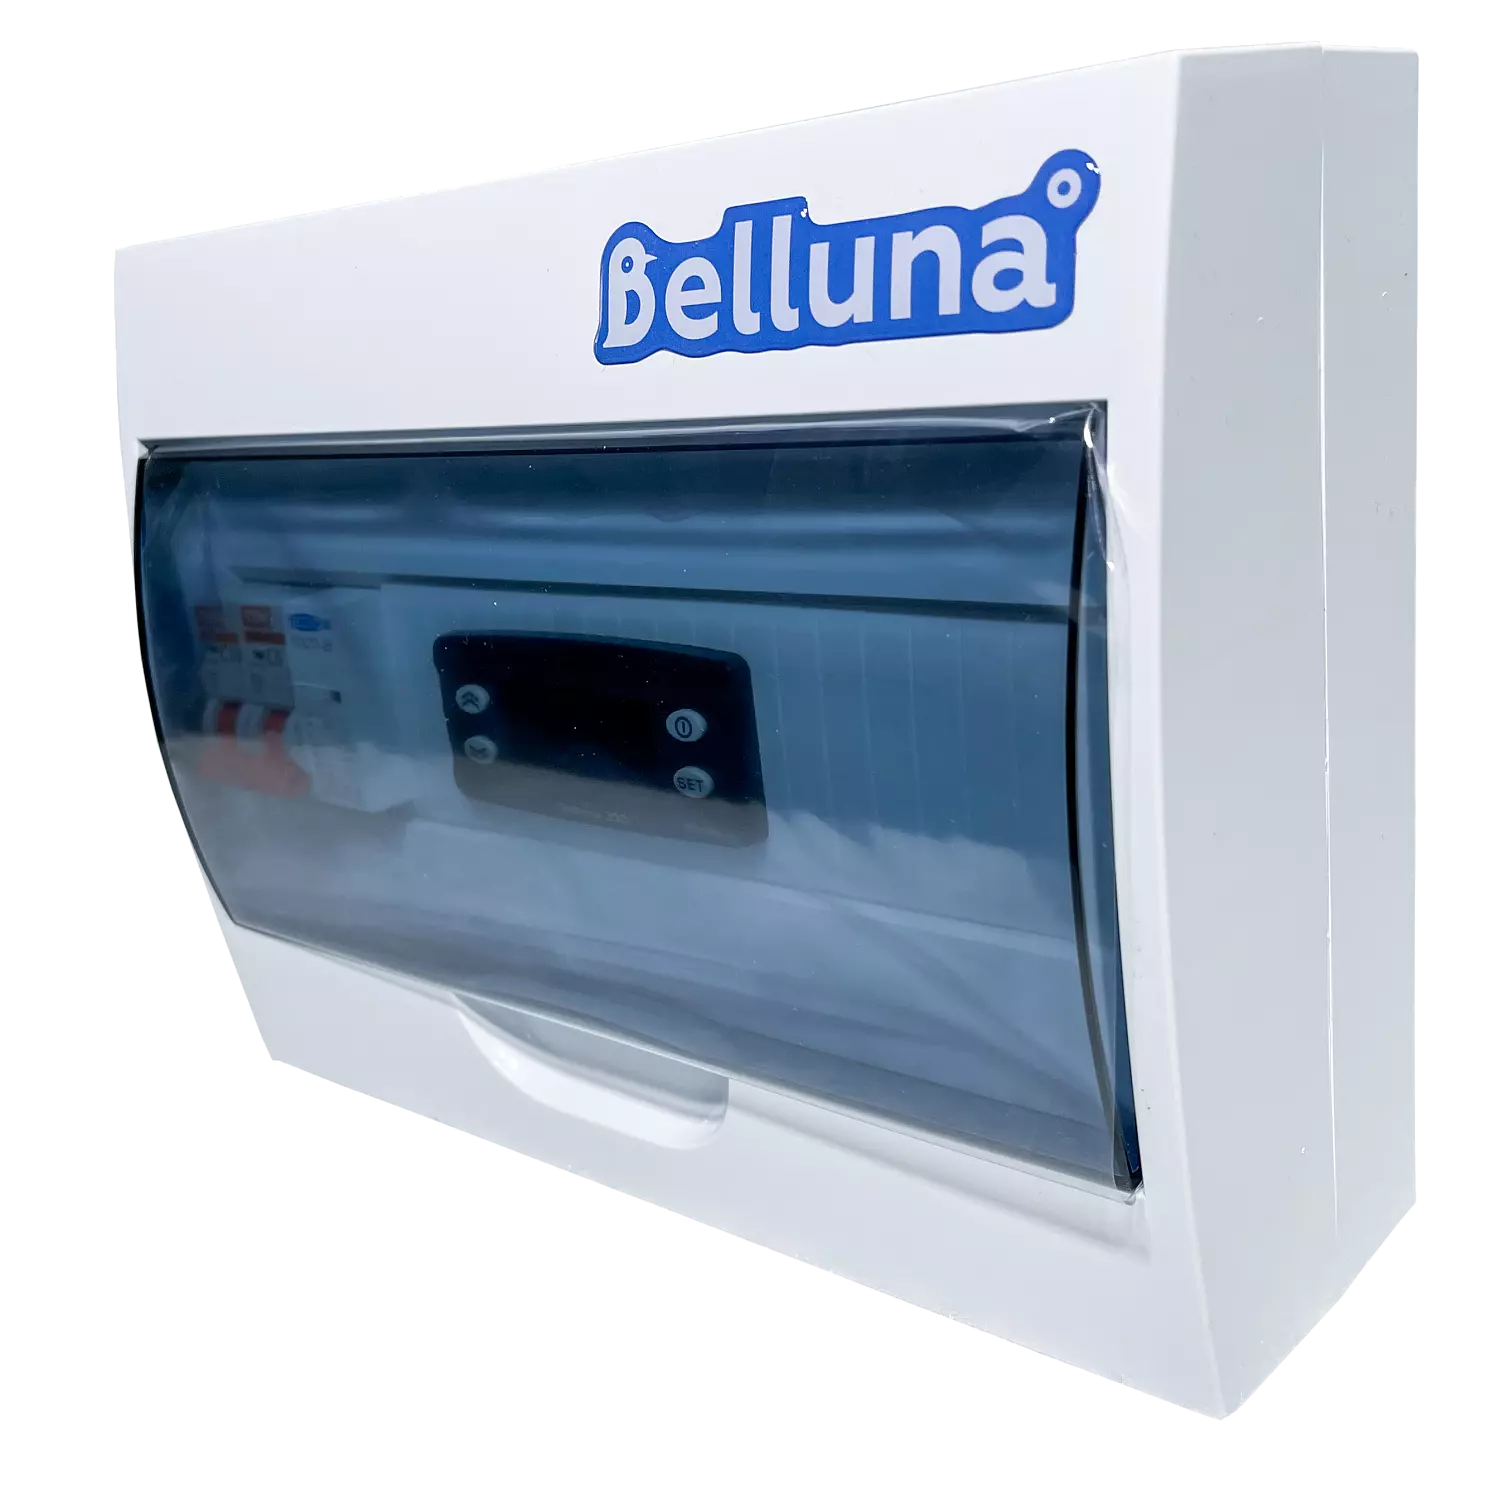 сплит-система Belluna U102-1 Екатеринбург